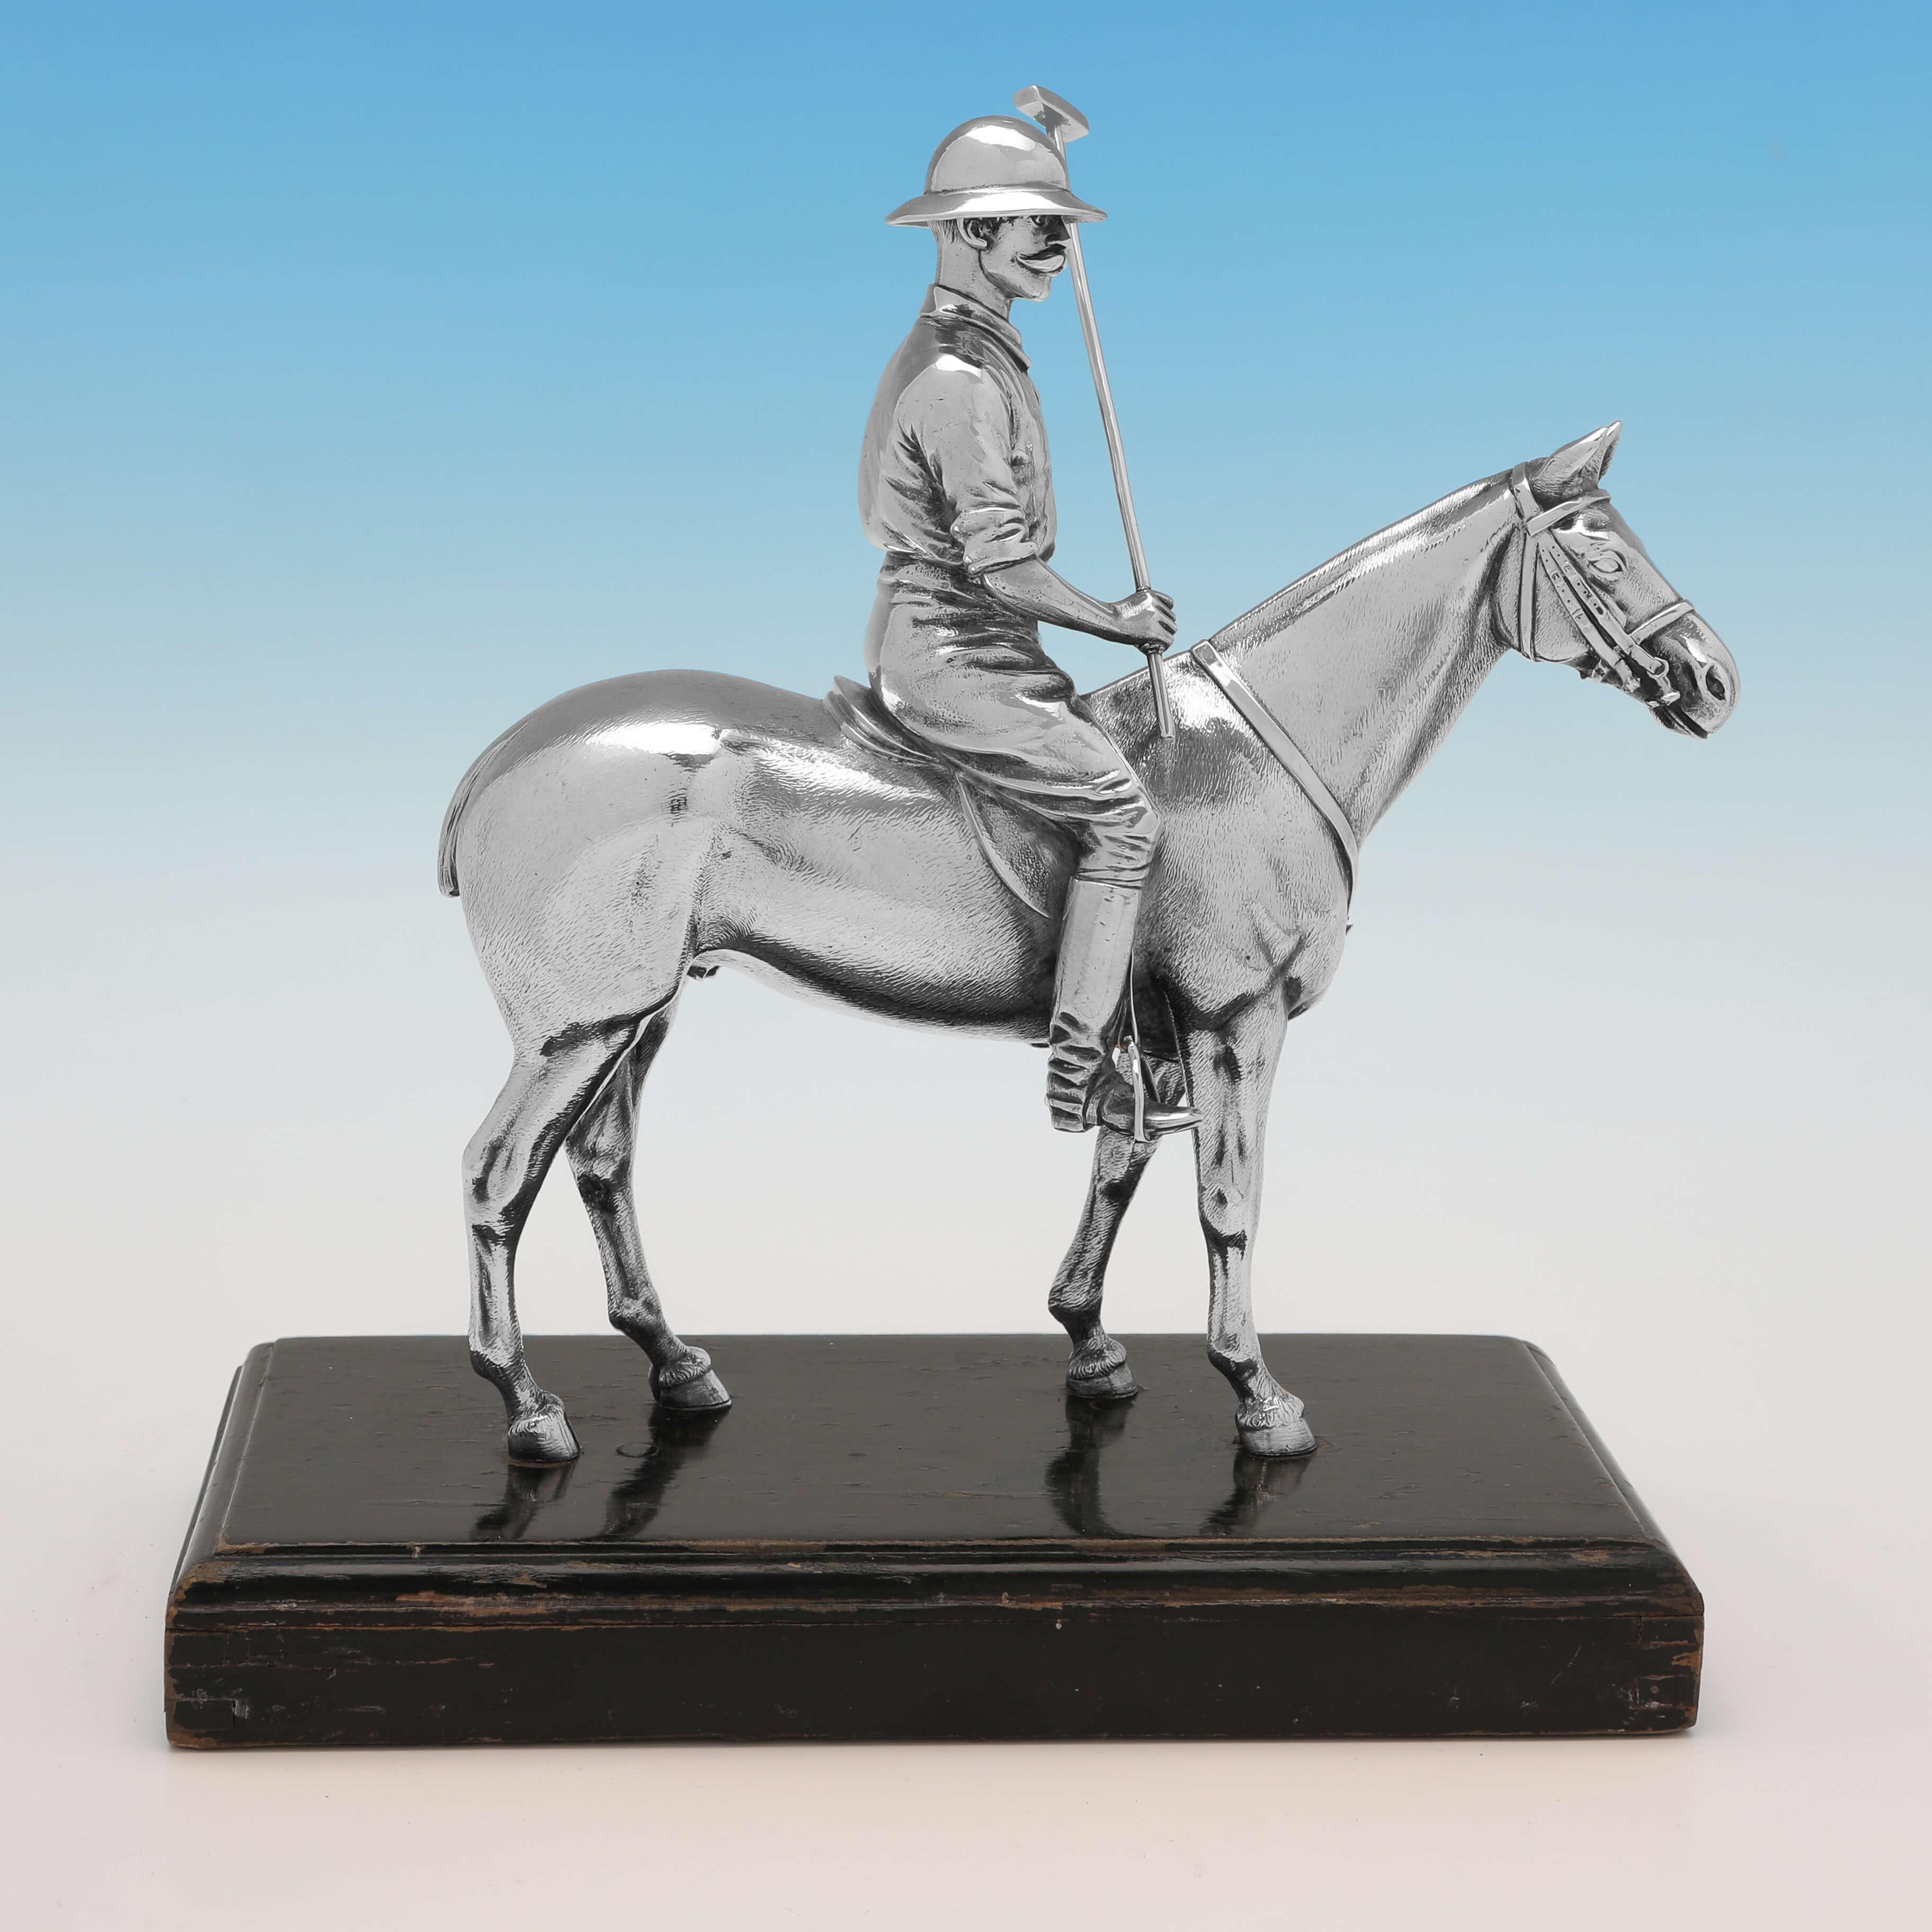 Dieses exquisite, antike Sterlingsilbermodell eines Polopferdes und eines Spielers wurde 1908 in London von Mappin & Webb gestempelt und ist wunderbar detailliert. 

Das Modell ist 19 cm (7,5